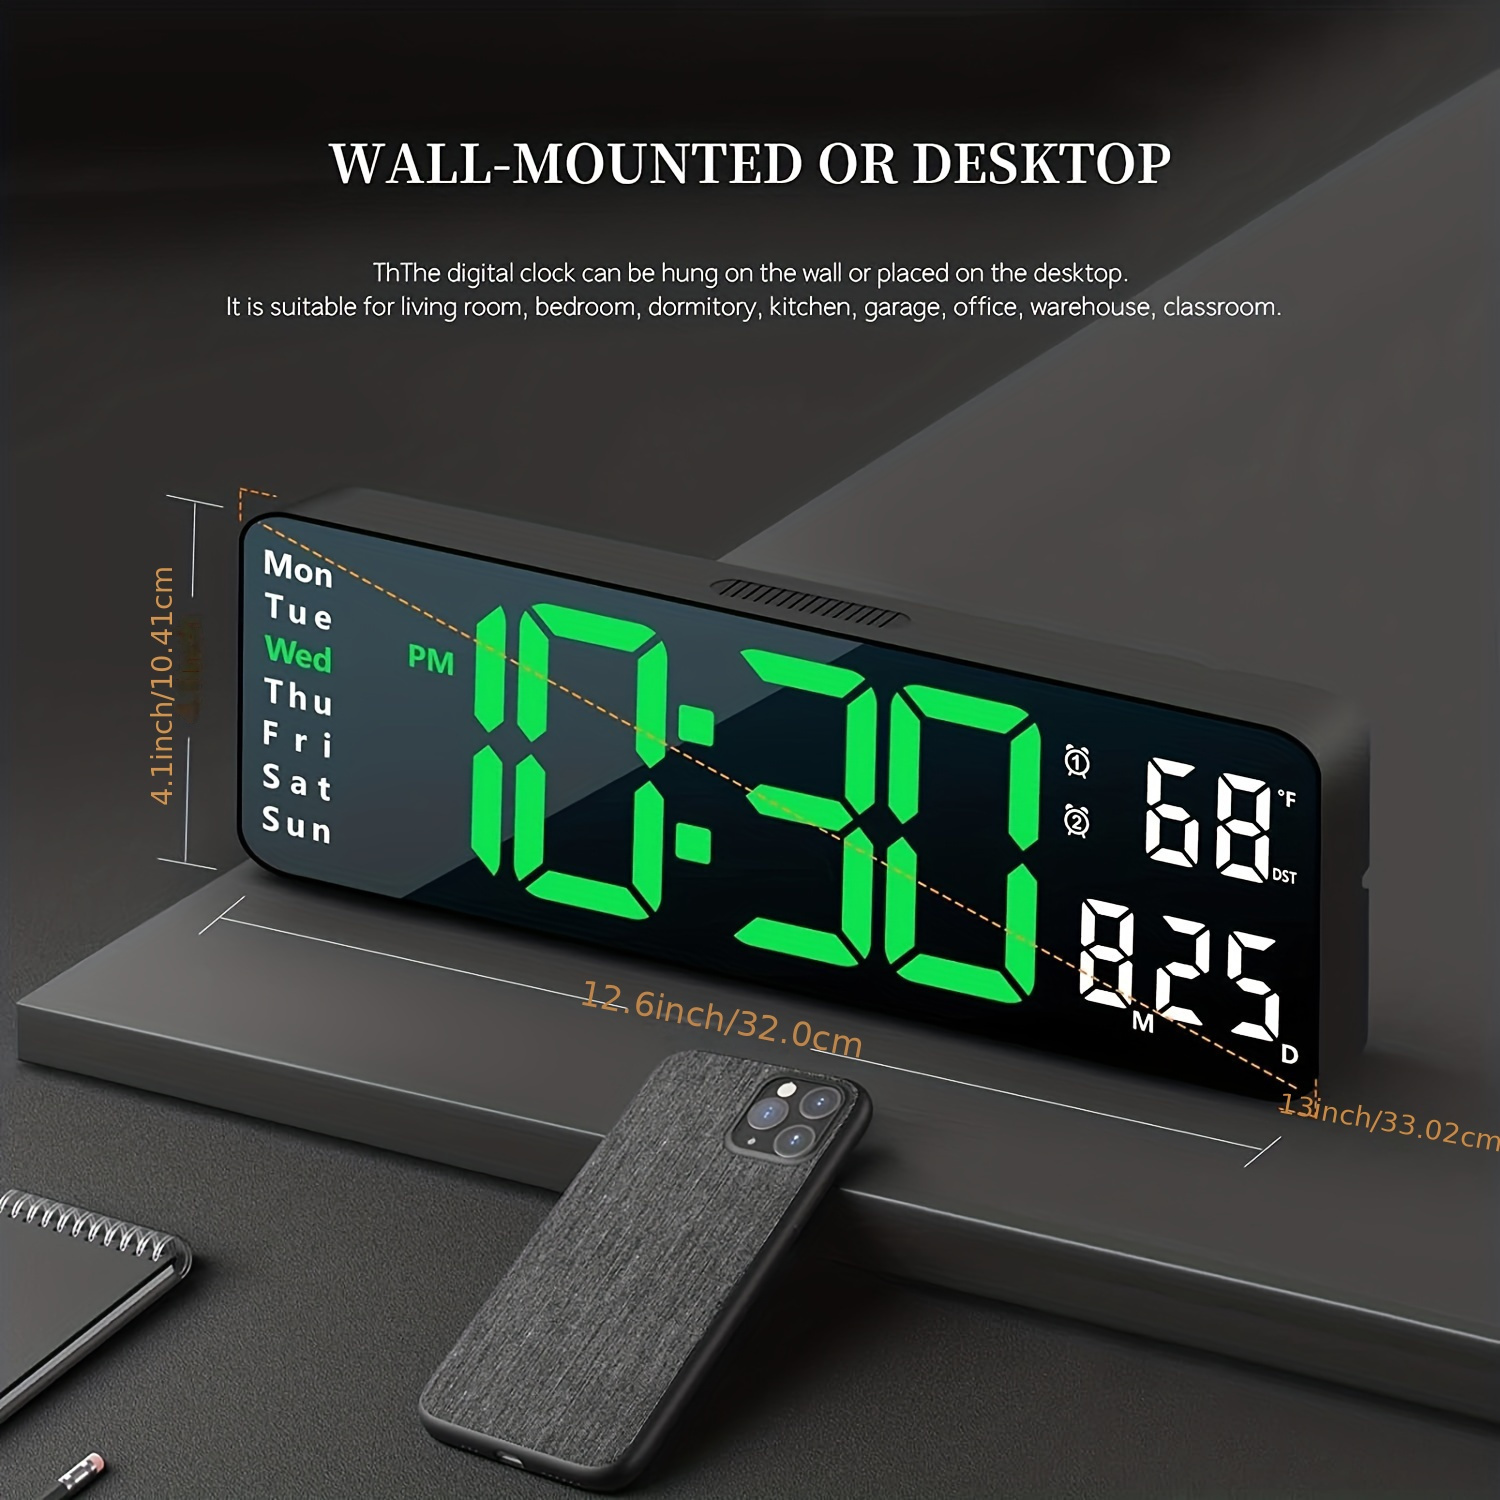 Moderno reloj de pared digital grande de 16 pulgadas con control remoto,  pantalla LED, atenuación automática, cuenta regresiva, temperatura